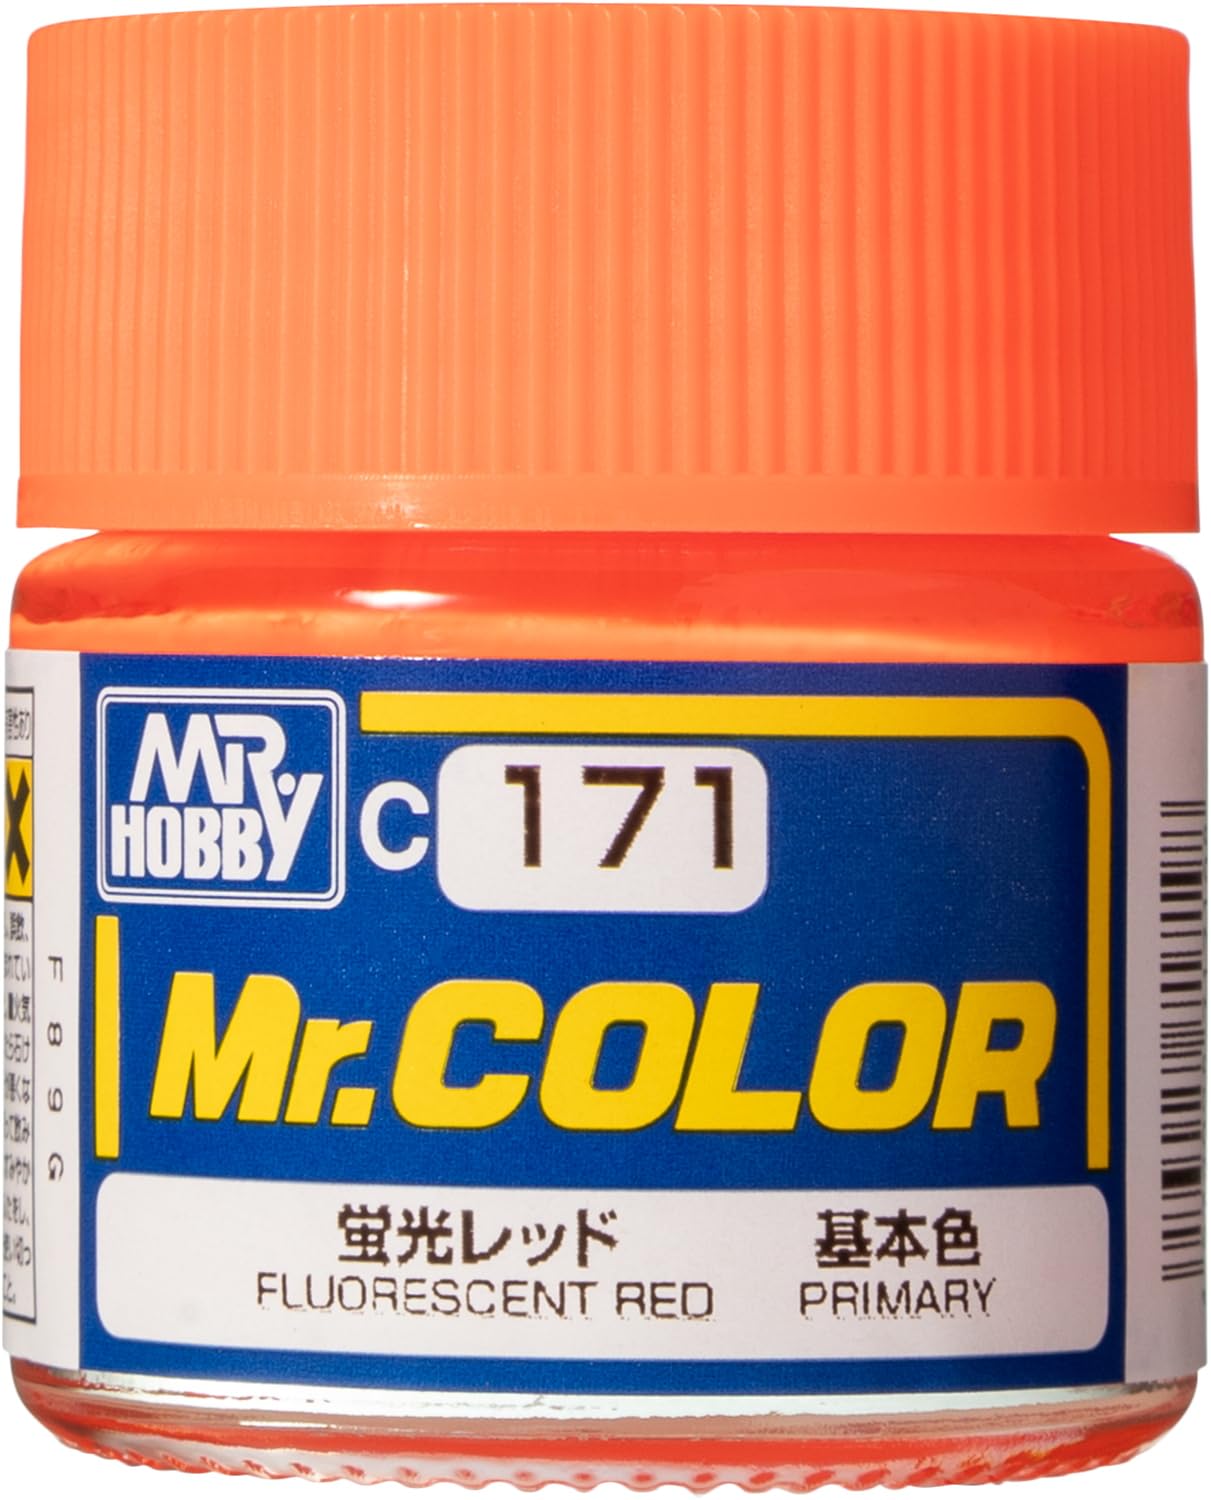 Mr. Hobby Mr. Color C171 Semi Gloss Fluorescent Red 10ml Bottle